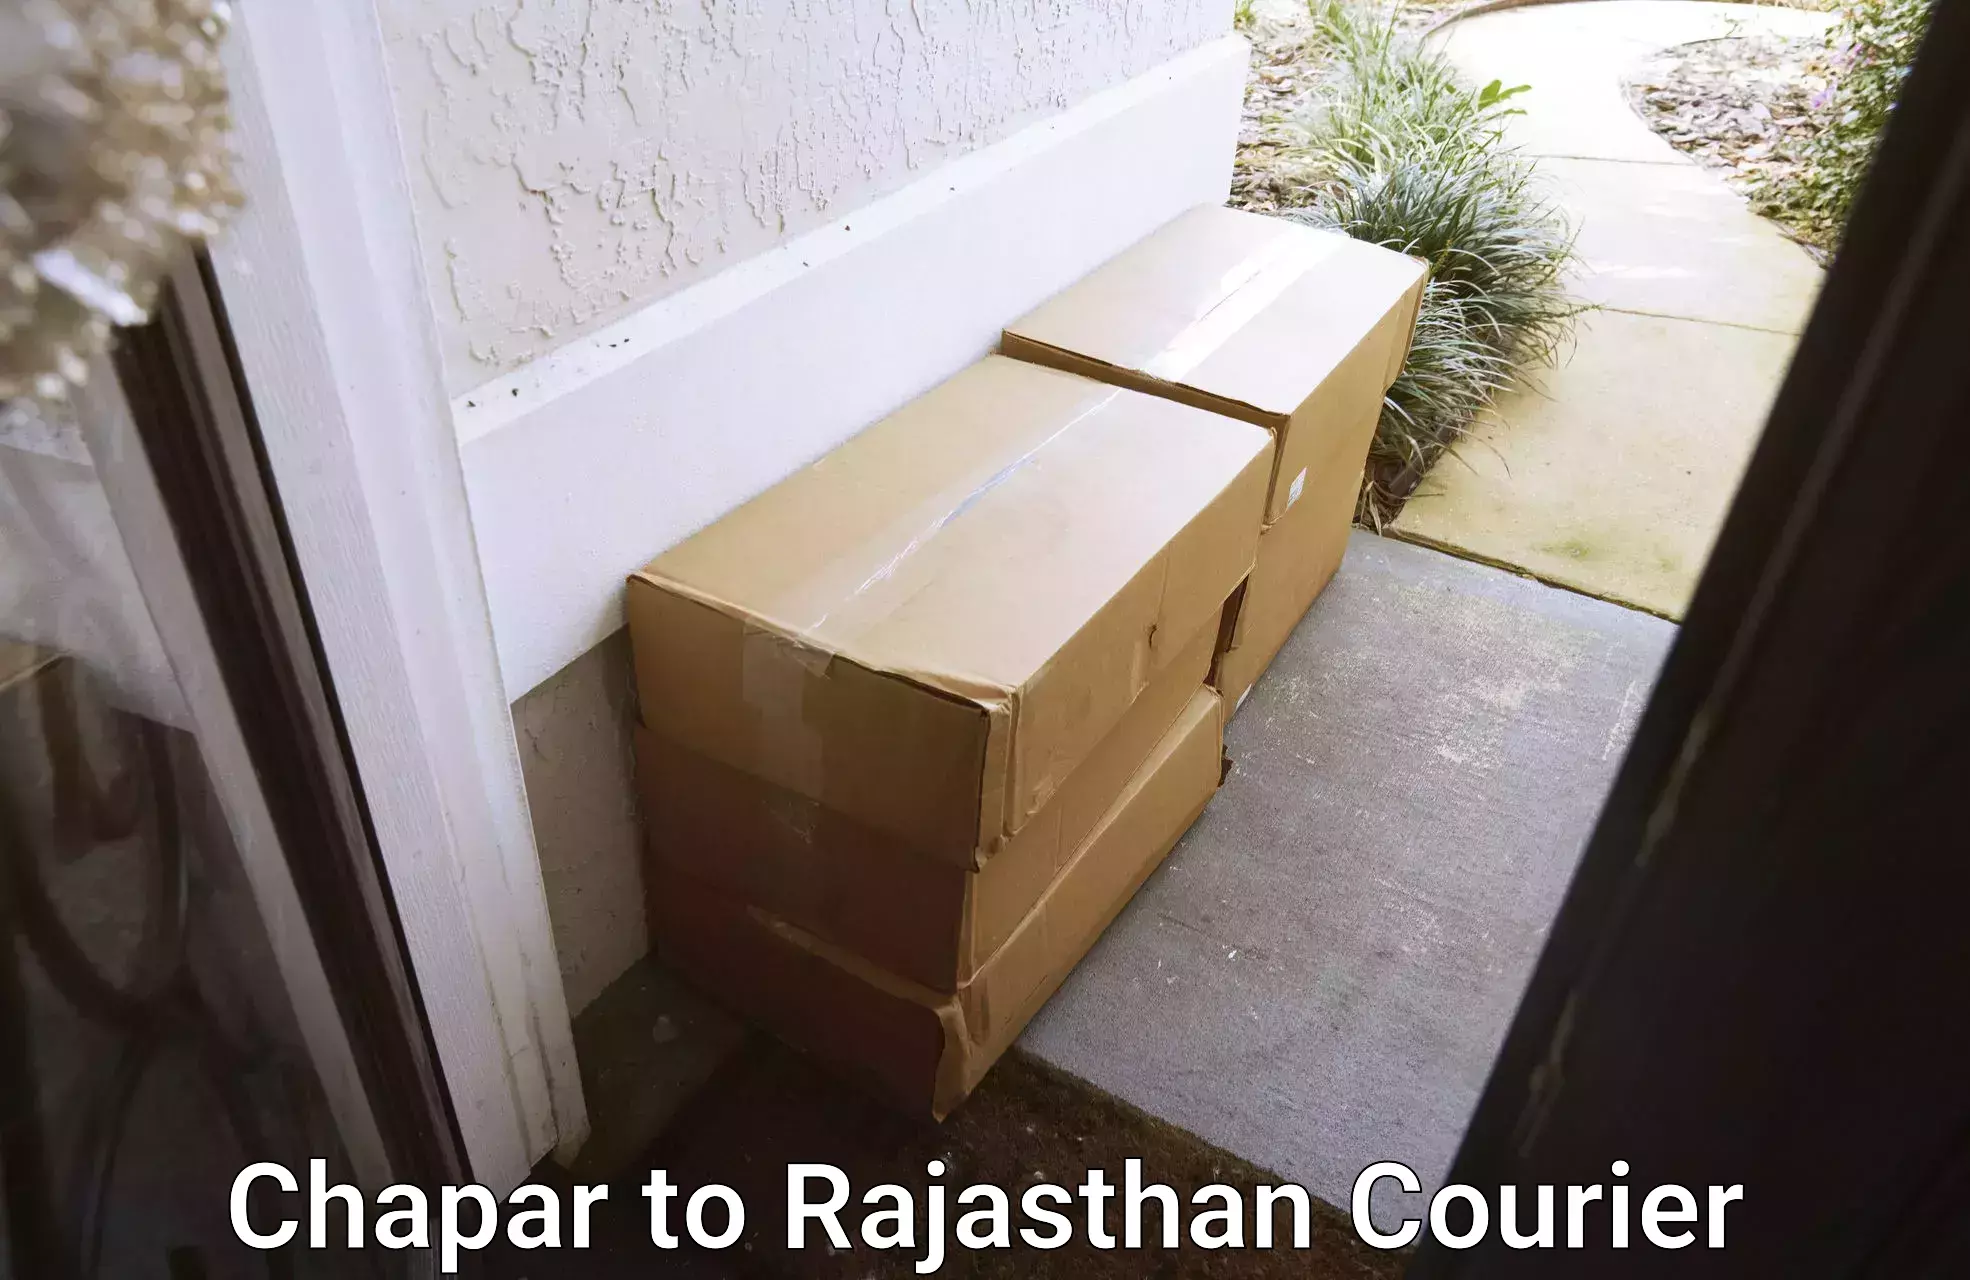 Cash on delivery service Chapar to Sambhar